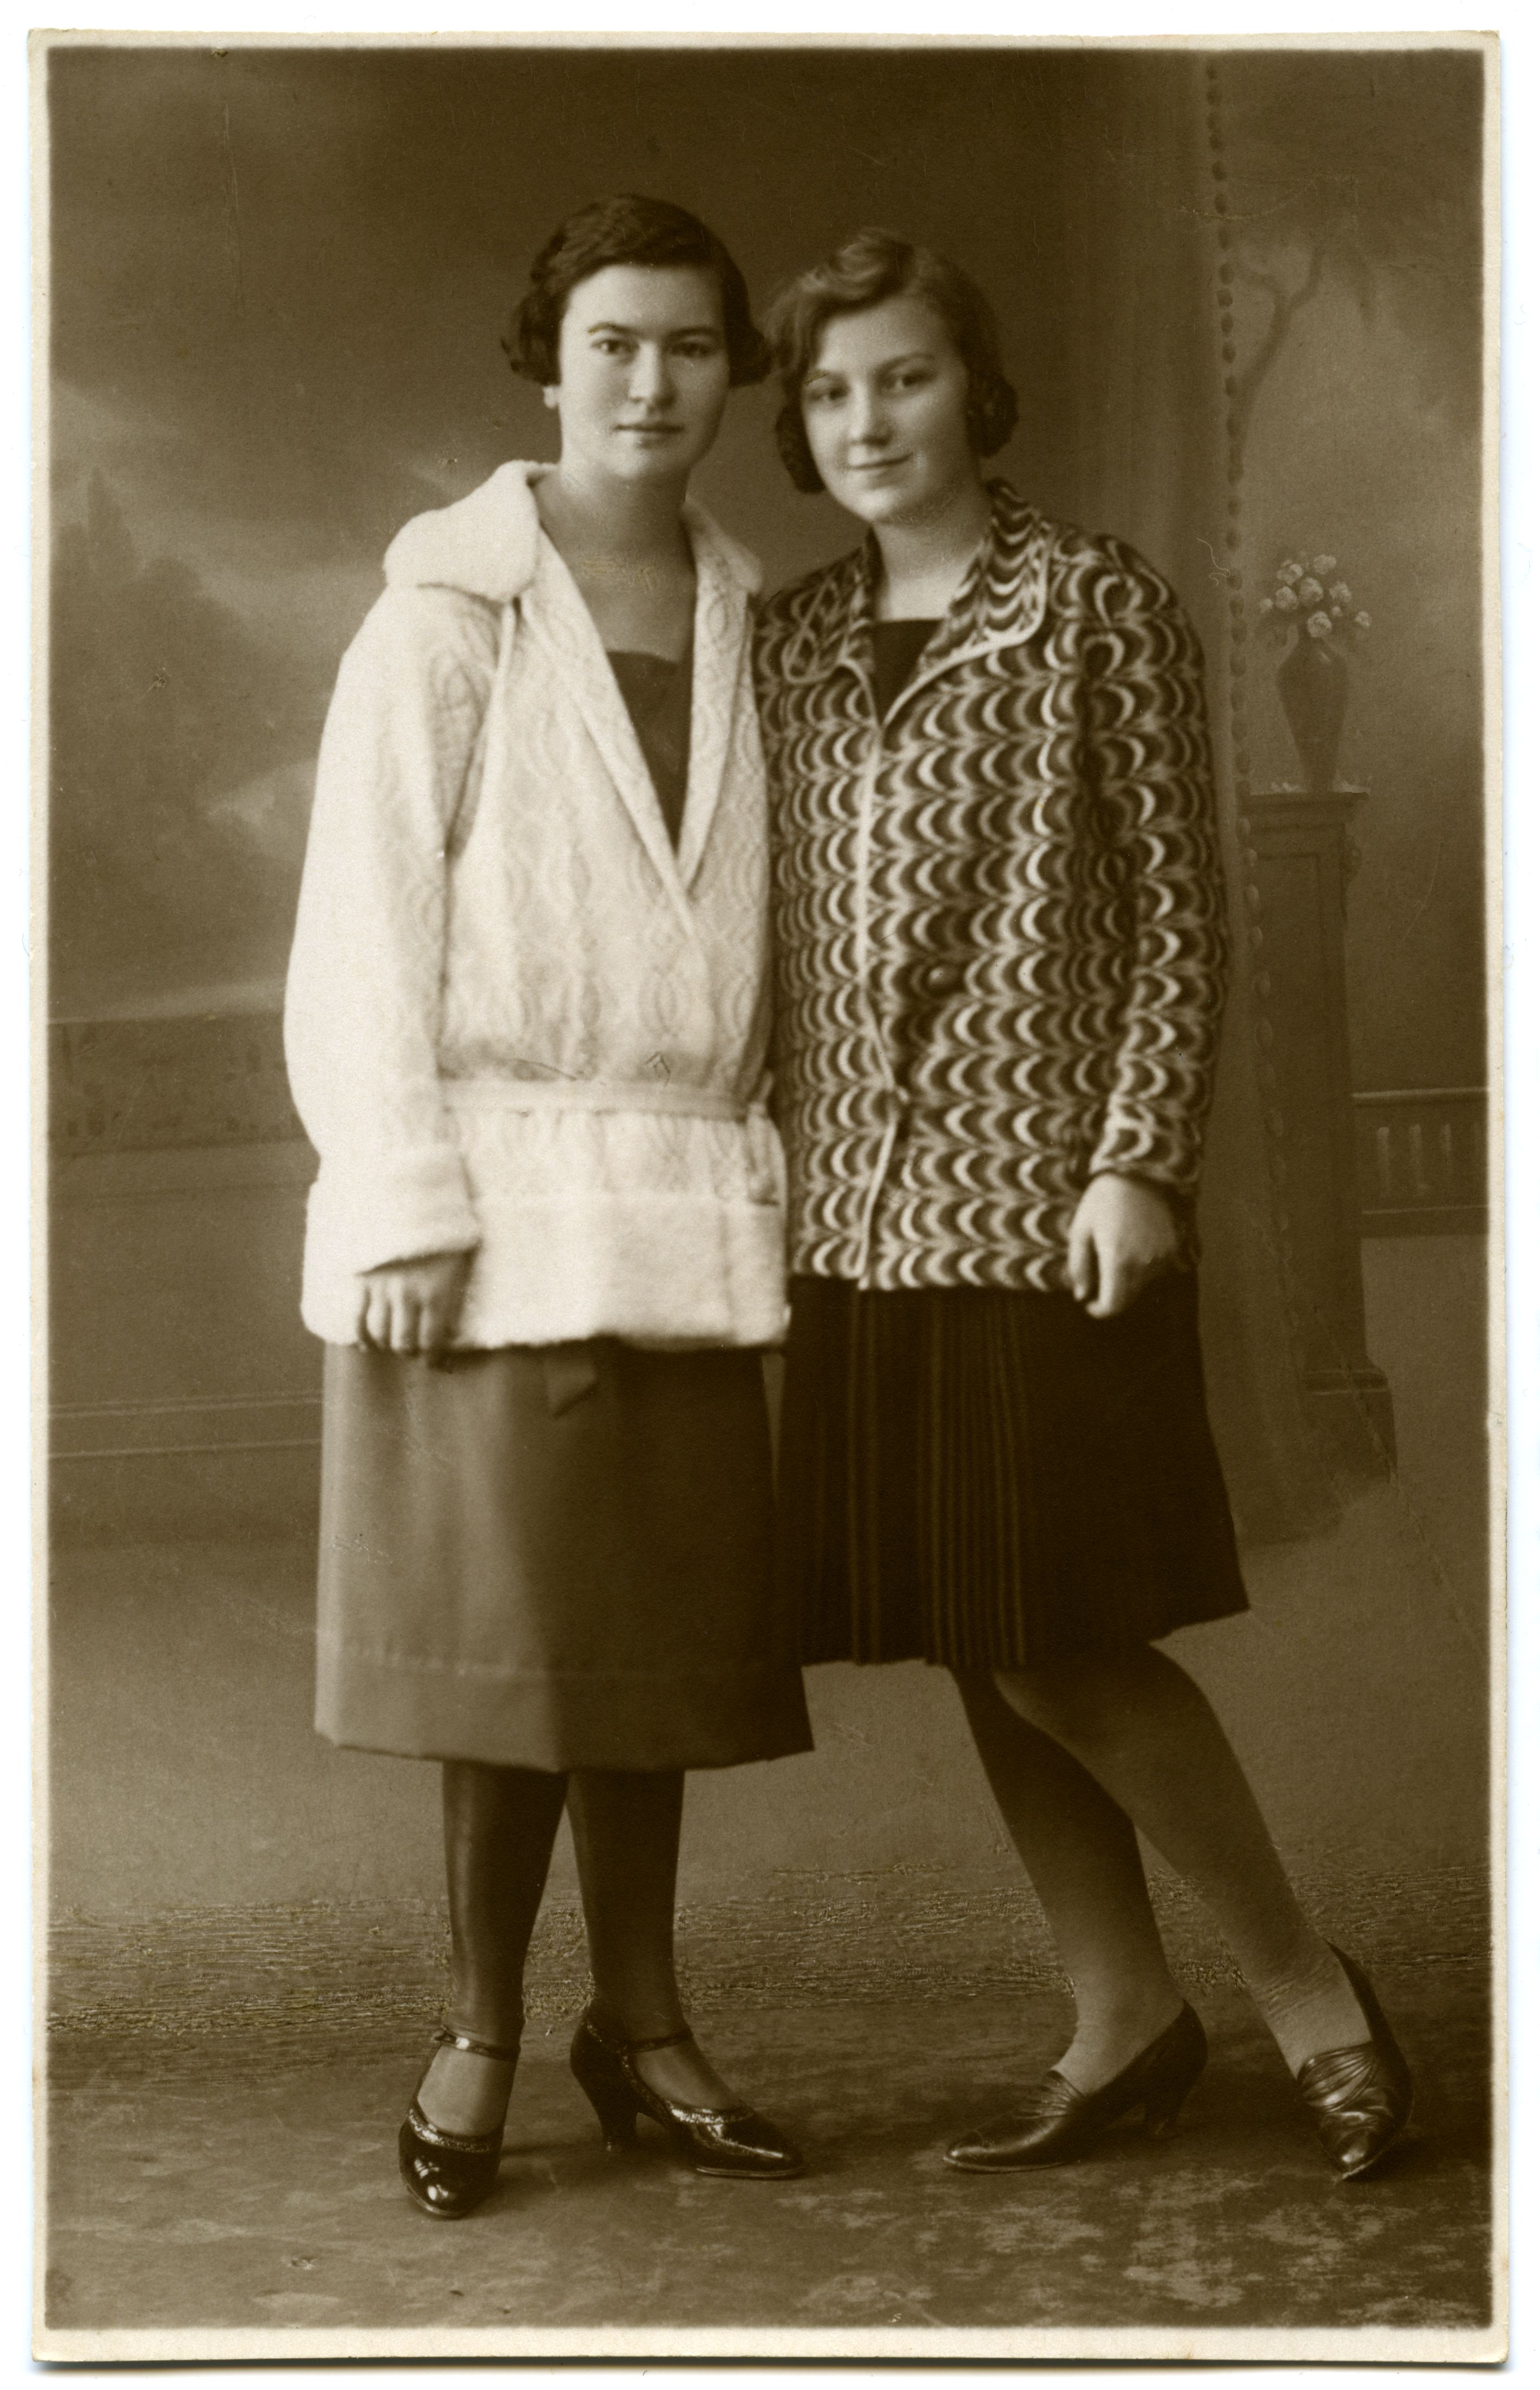 Kaks neidu pikkades jakkides 4.12.1927